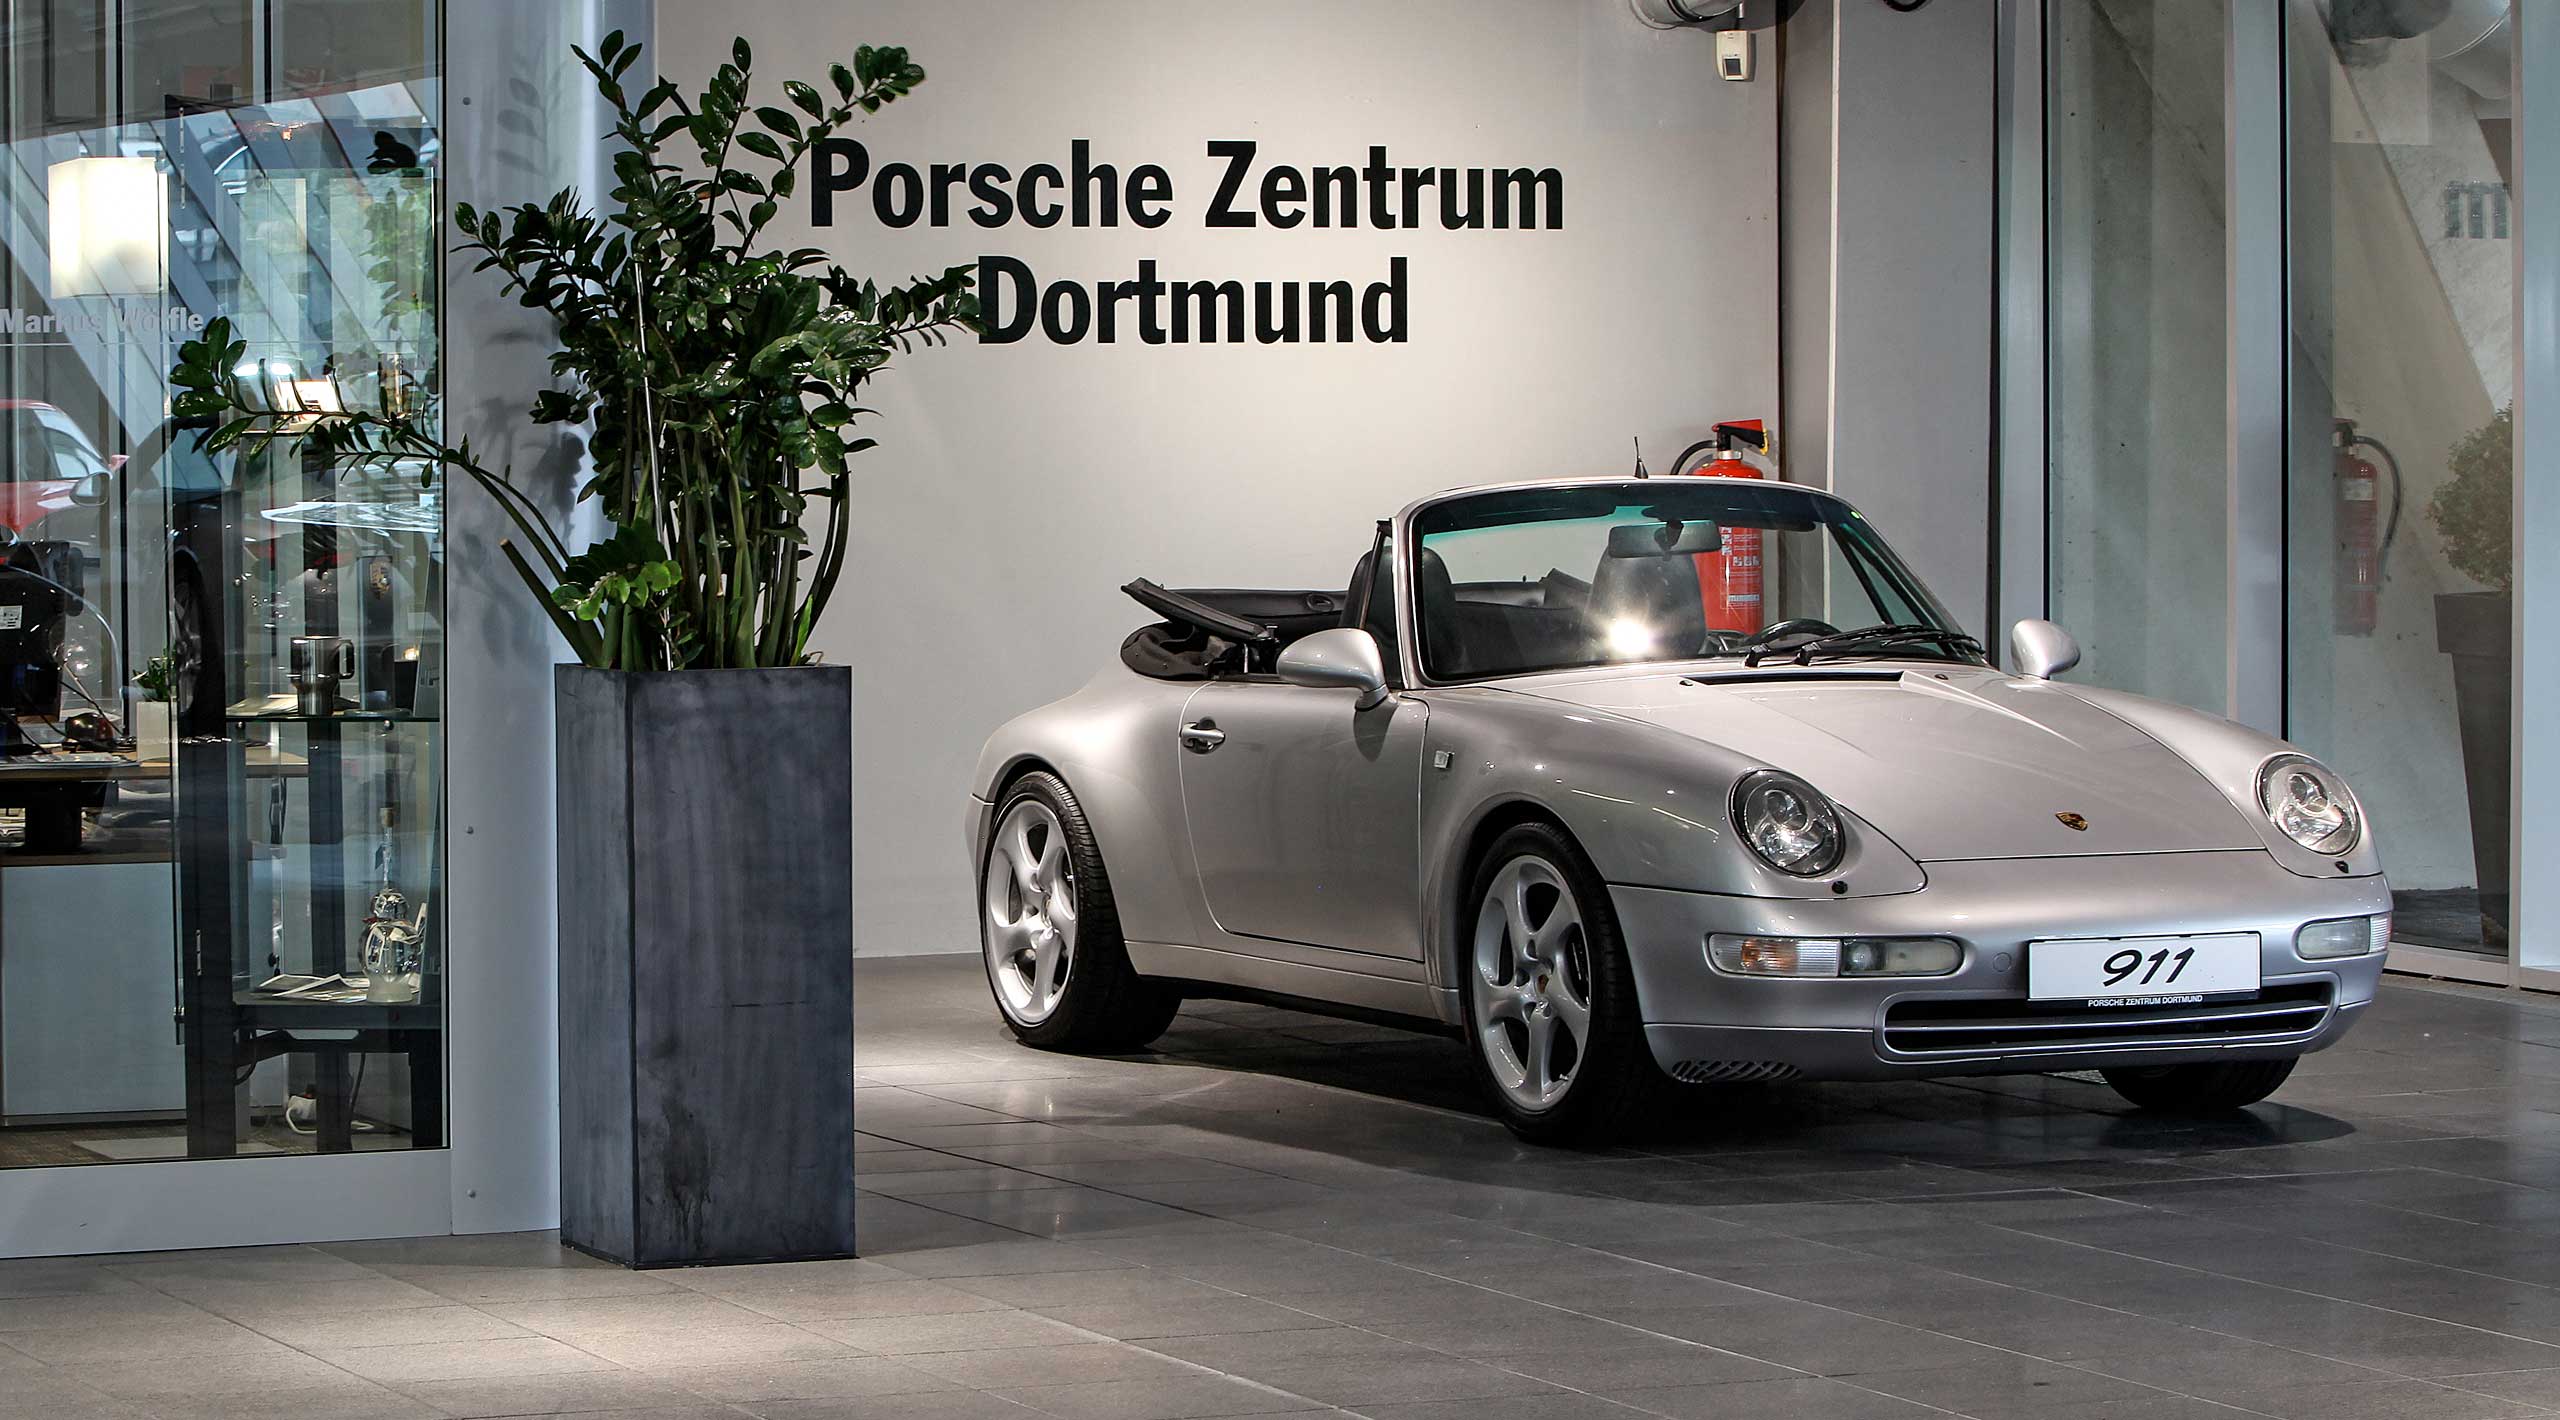 Porsche Zentrum, Dortmund